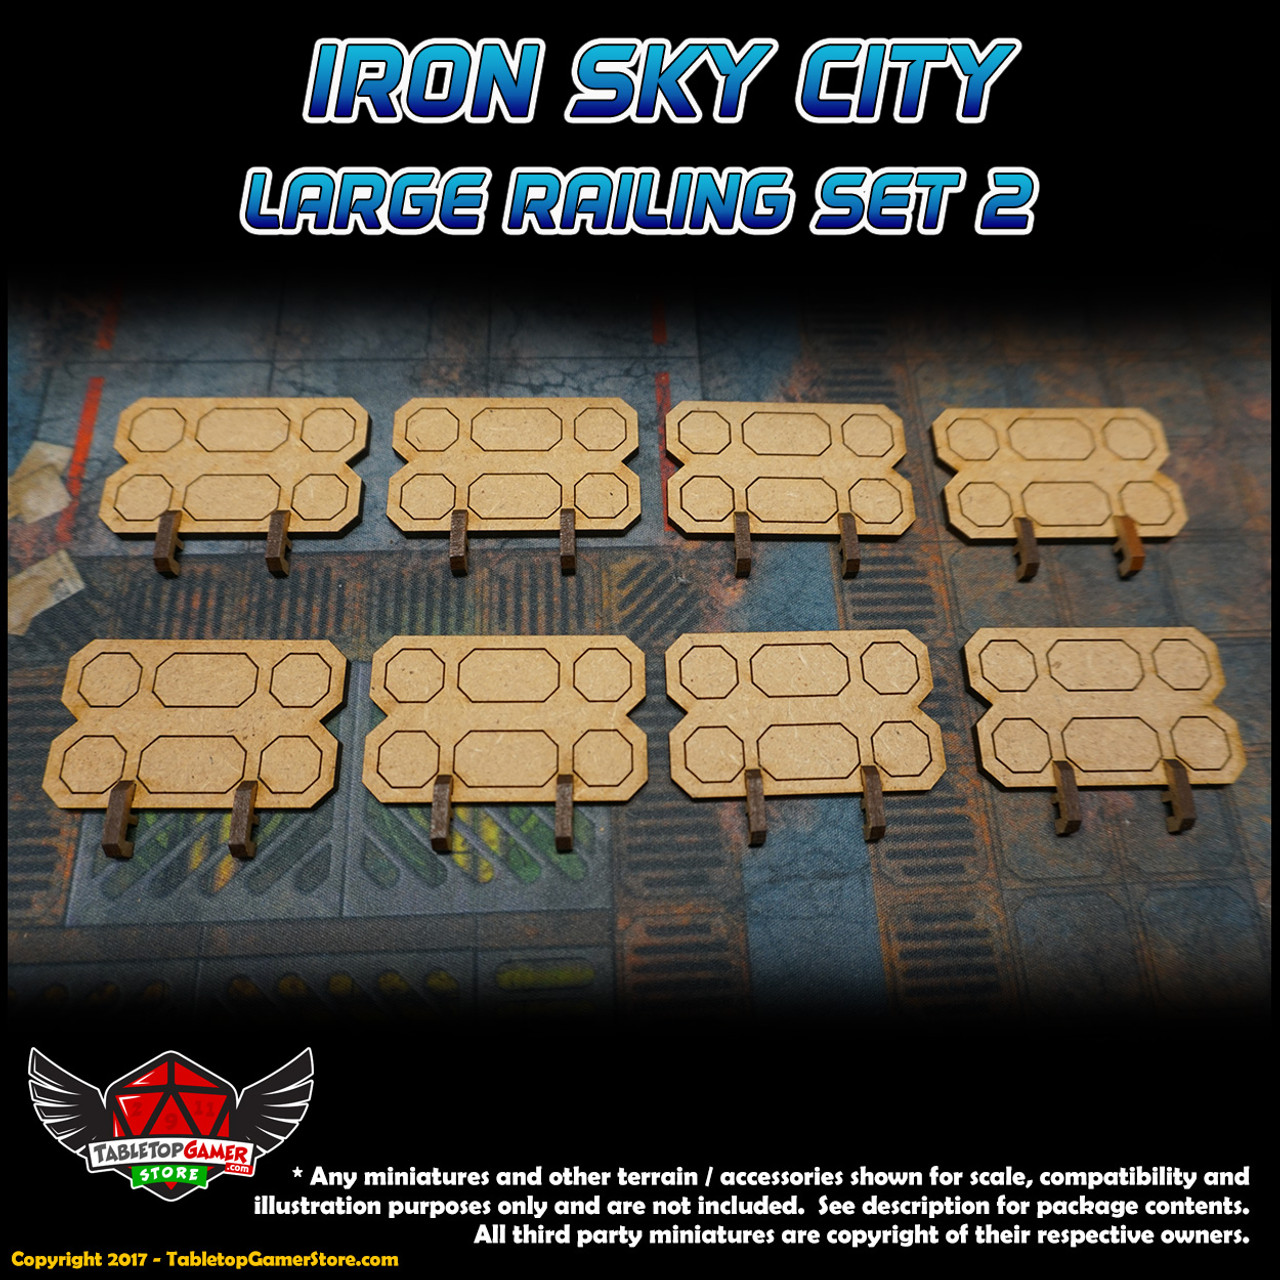 Iron Sky City Large Railing Set B